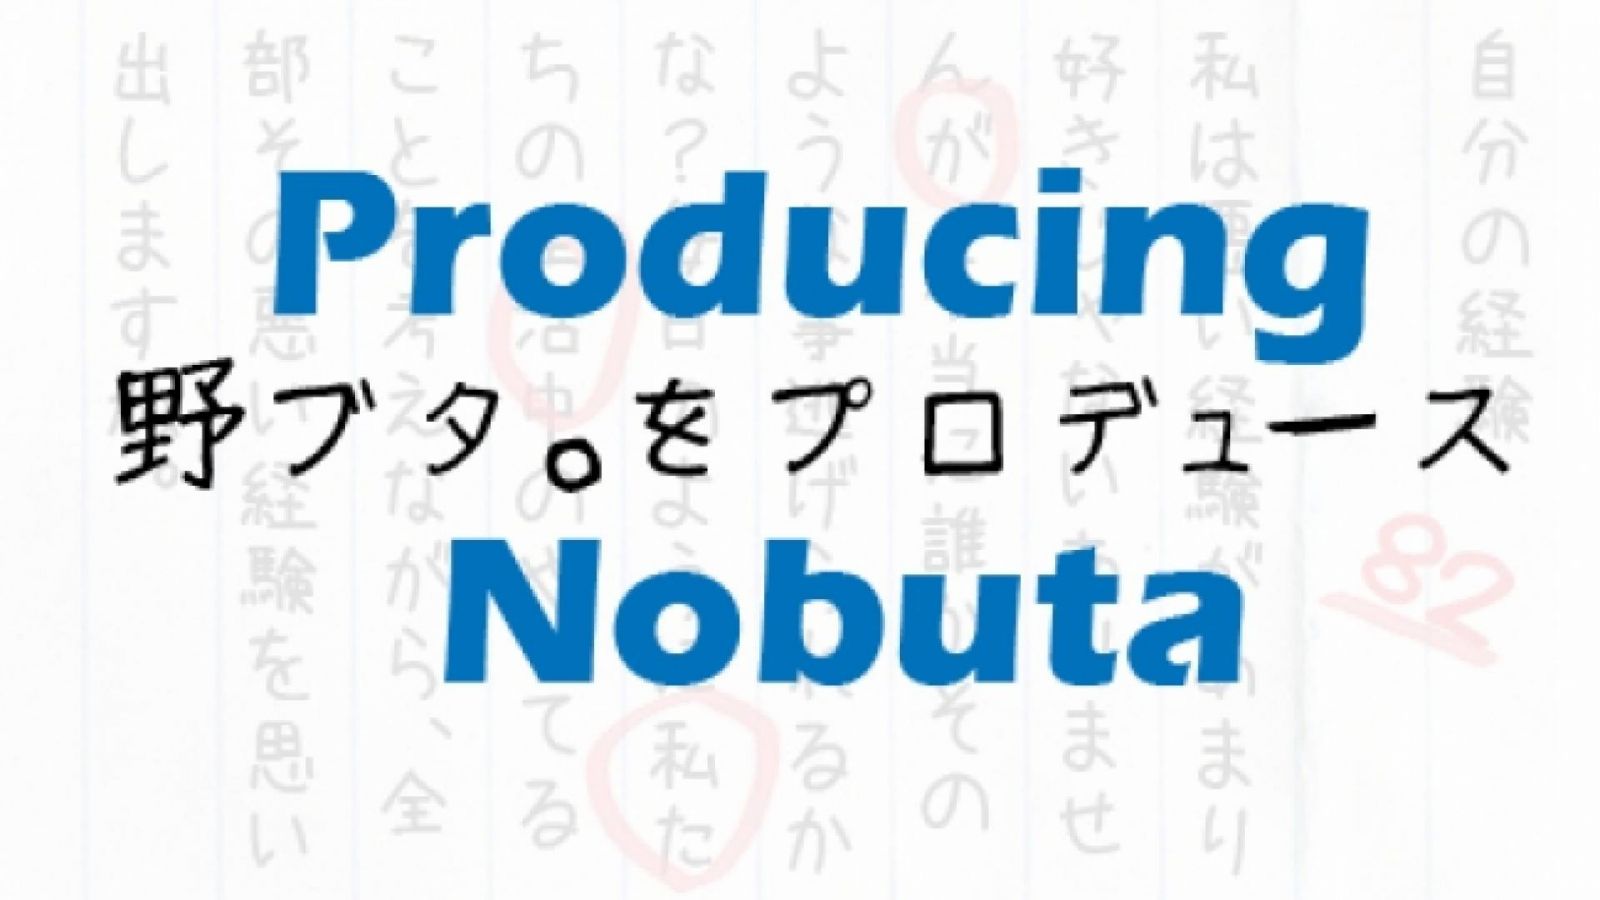 Nobuta wo Produce © JaME - Jennifer Rivera